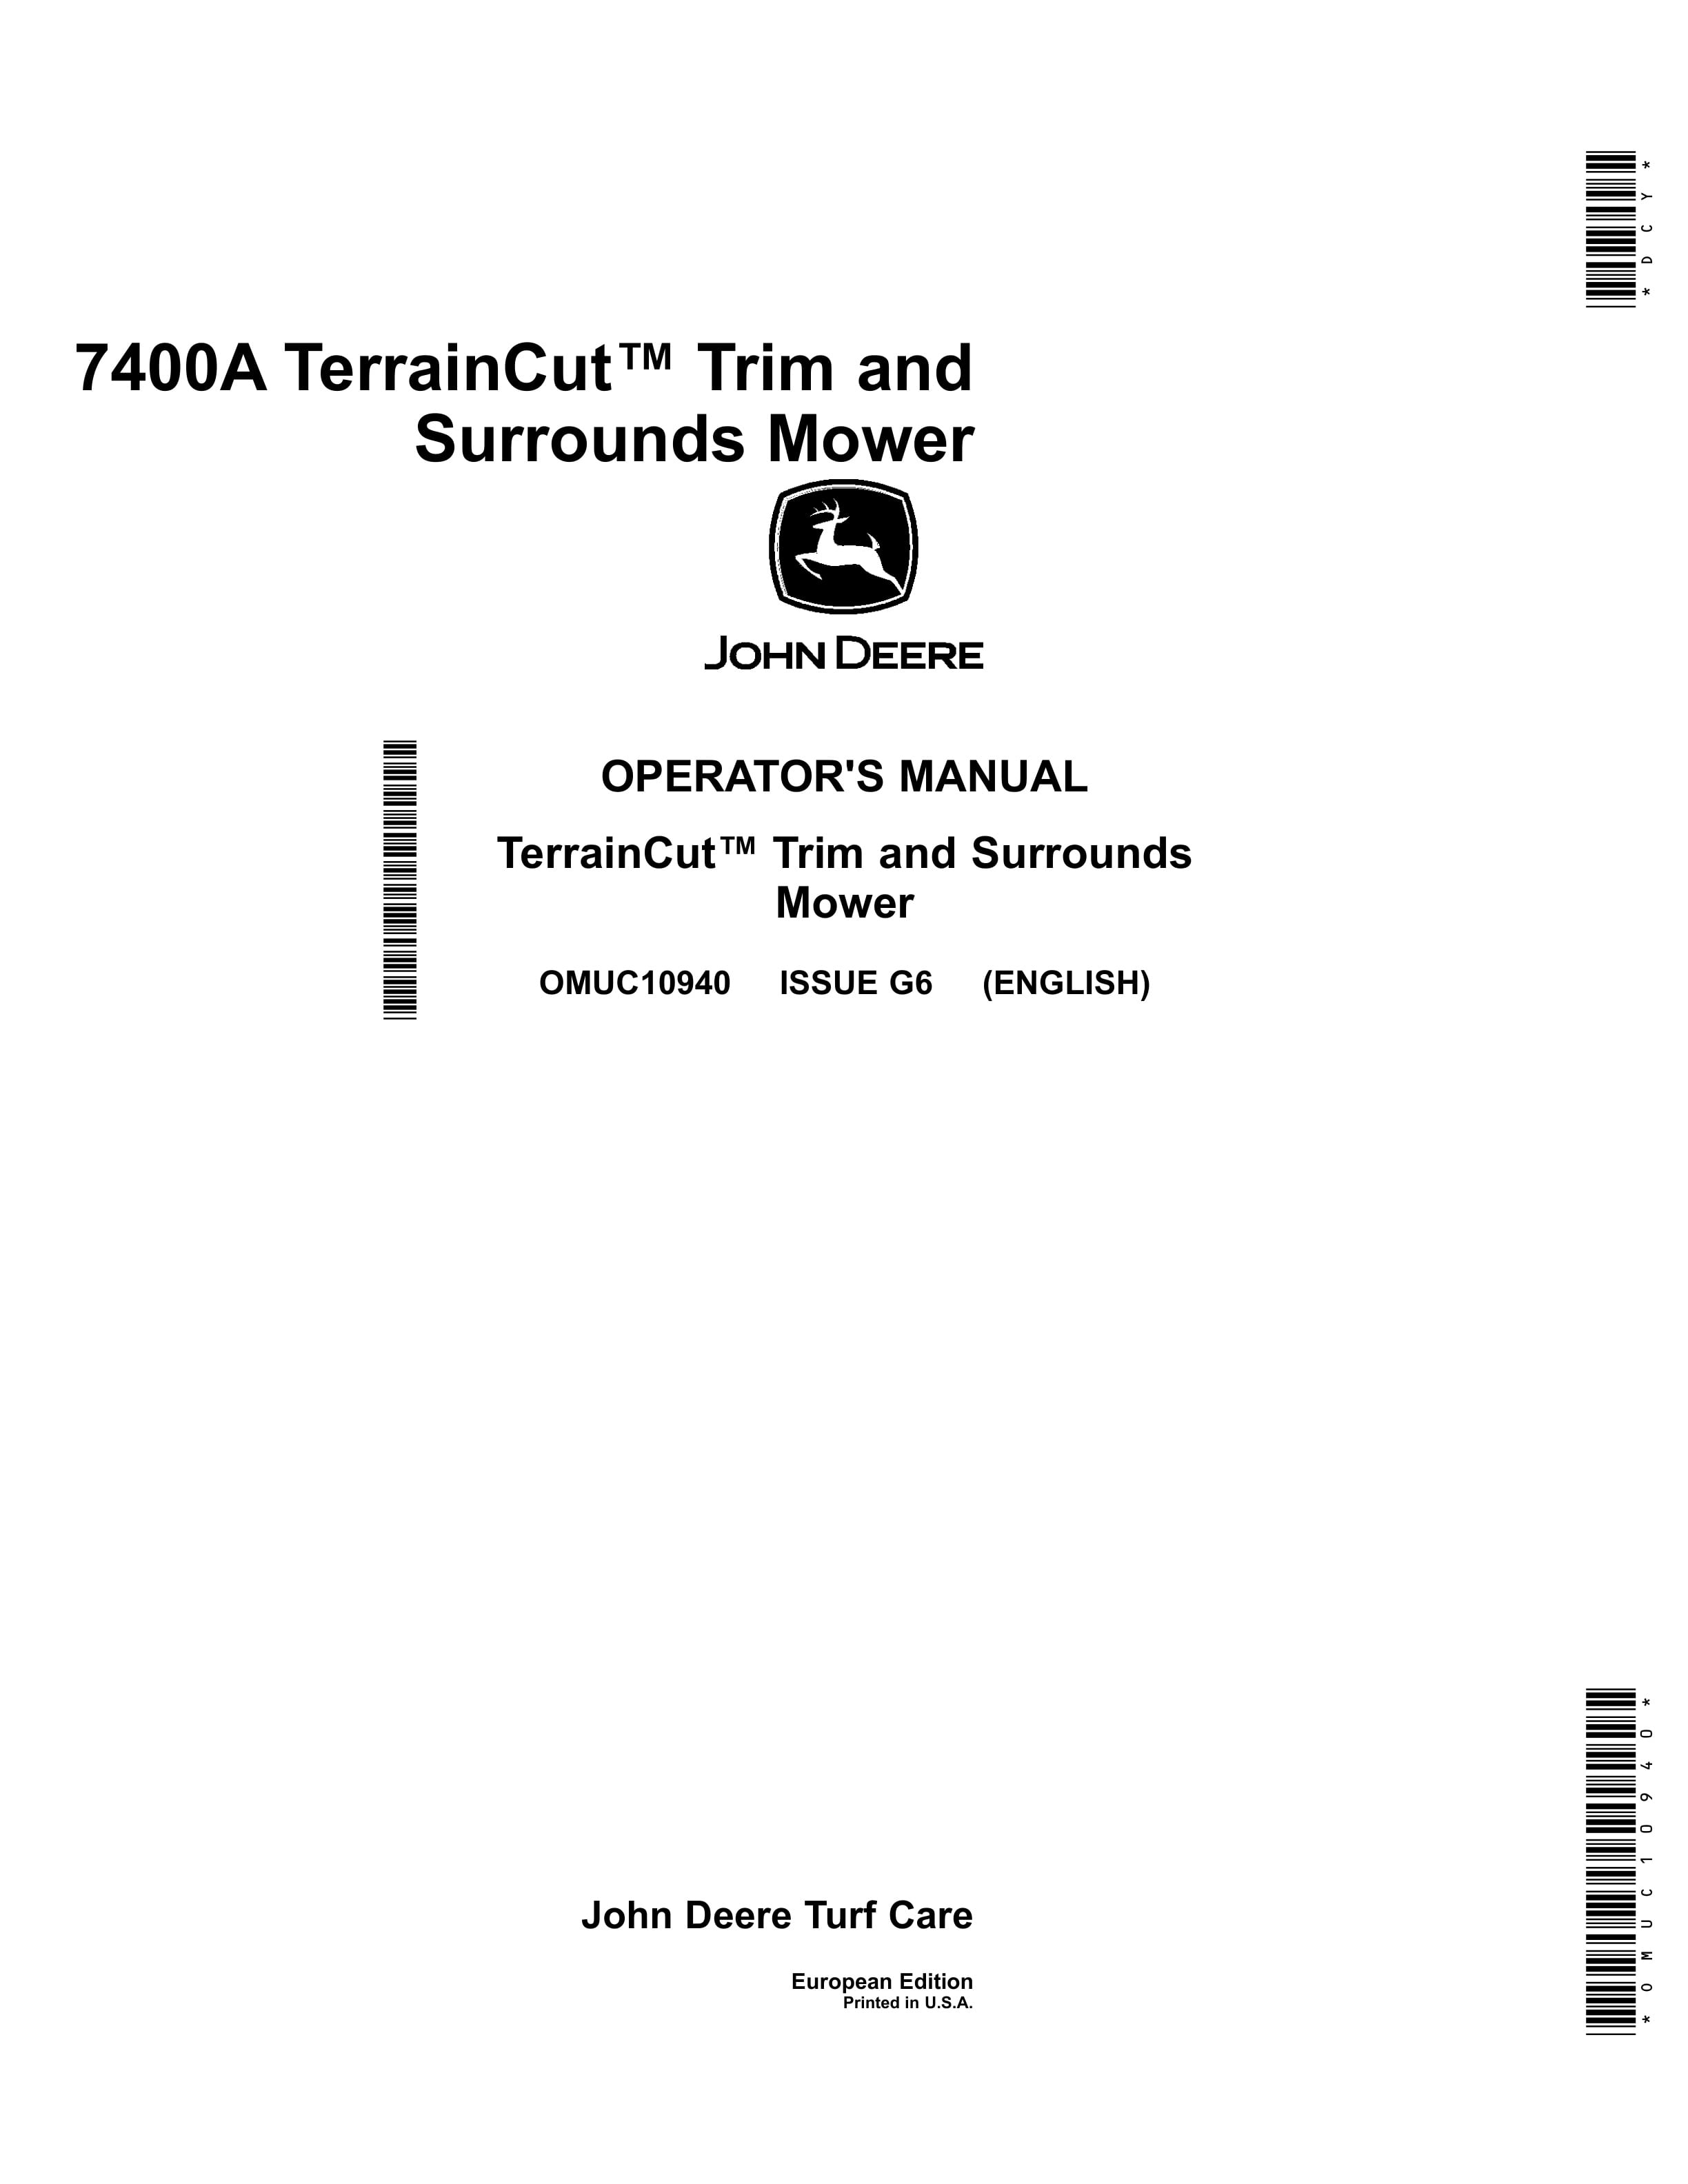 John Deere 7400A TerrainCut Trim and Surrounds Mower Operator Manual OMUC10940 1